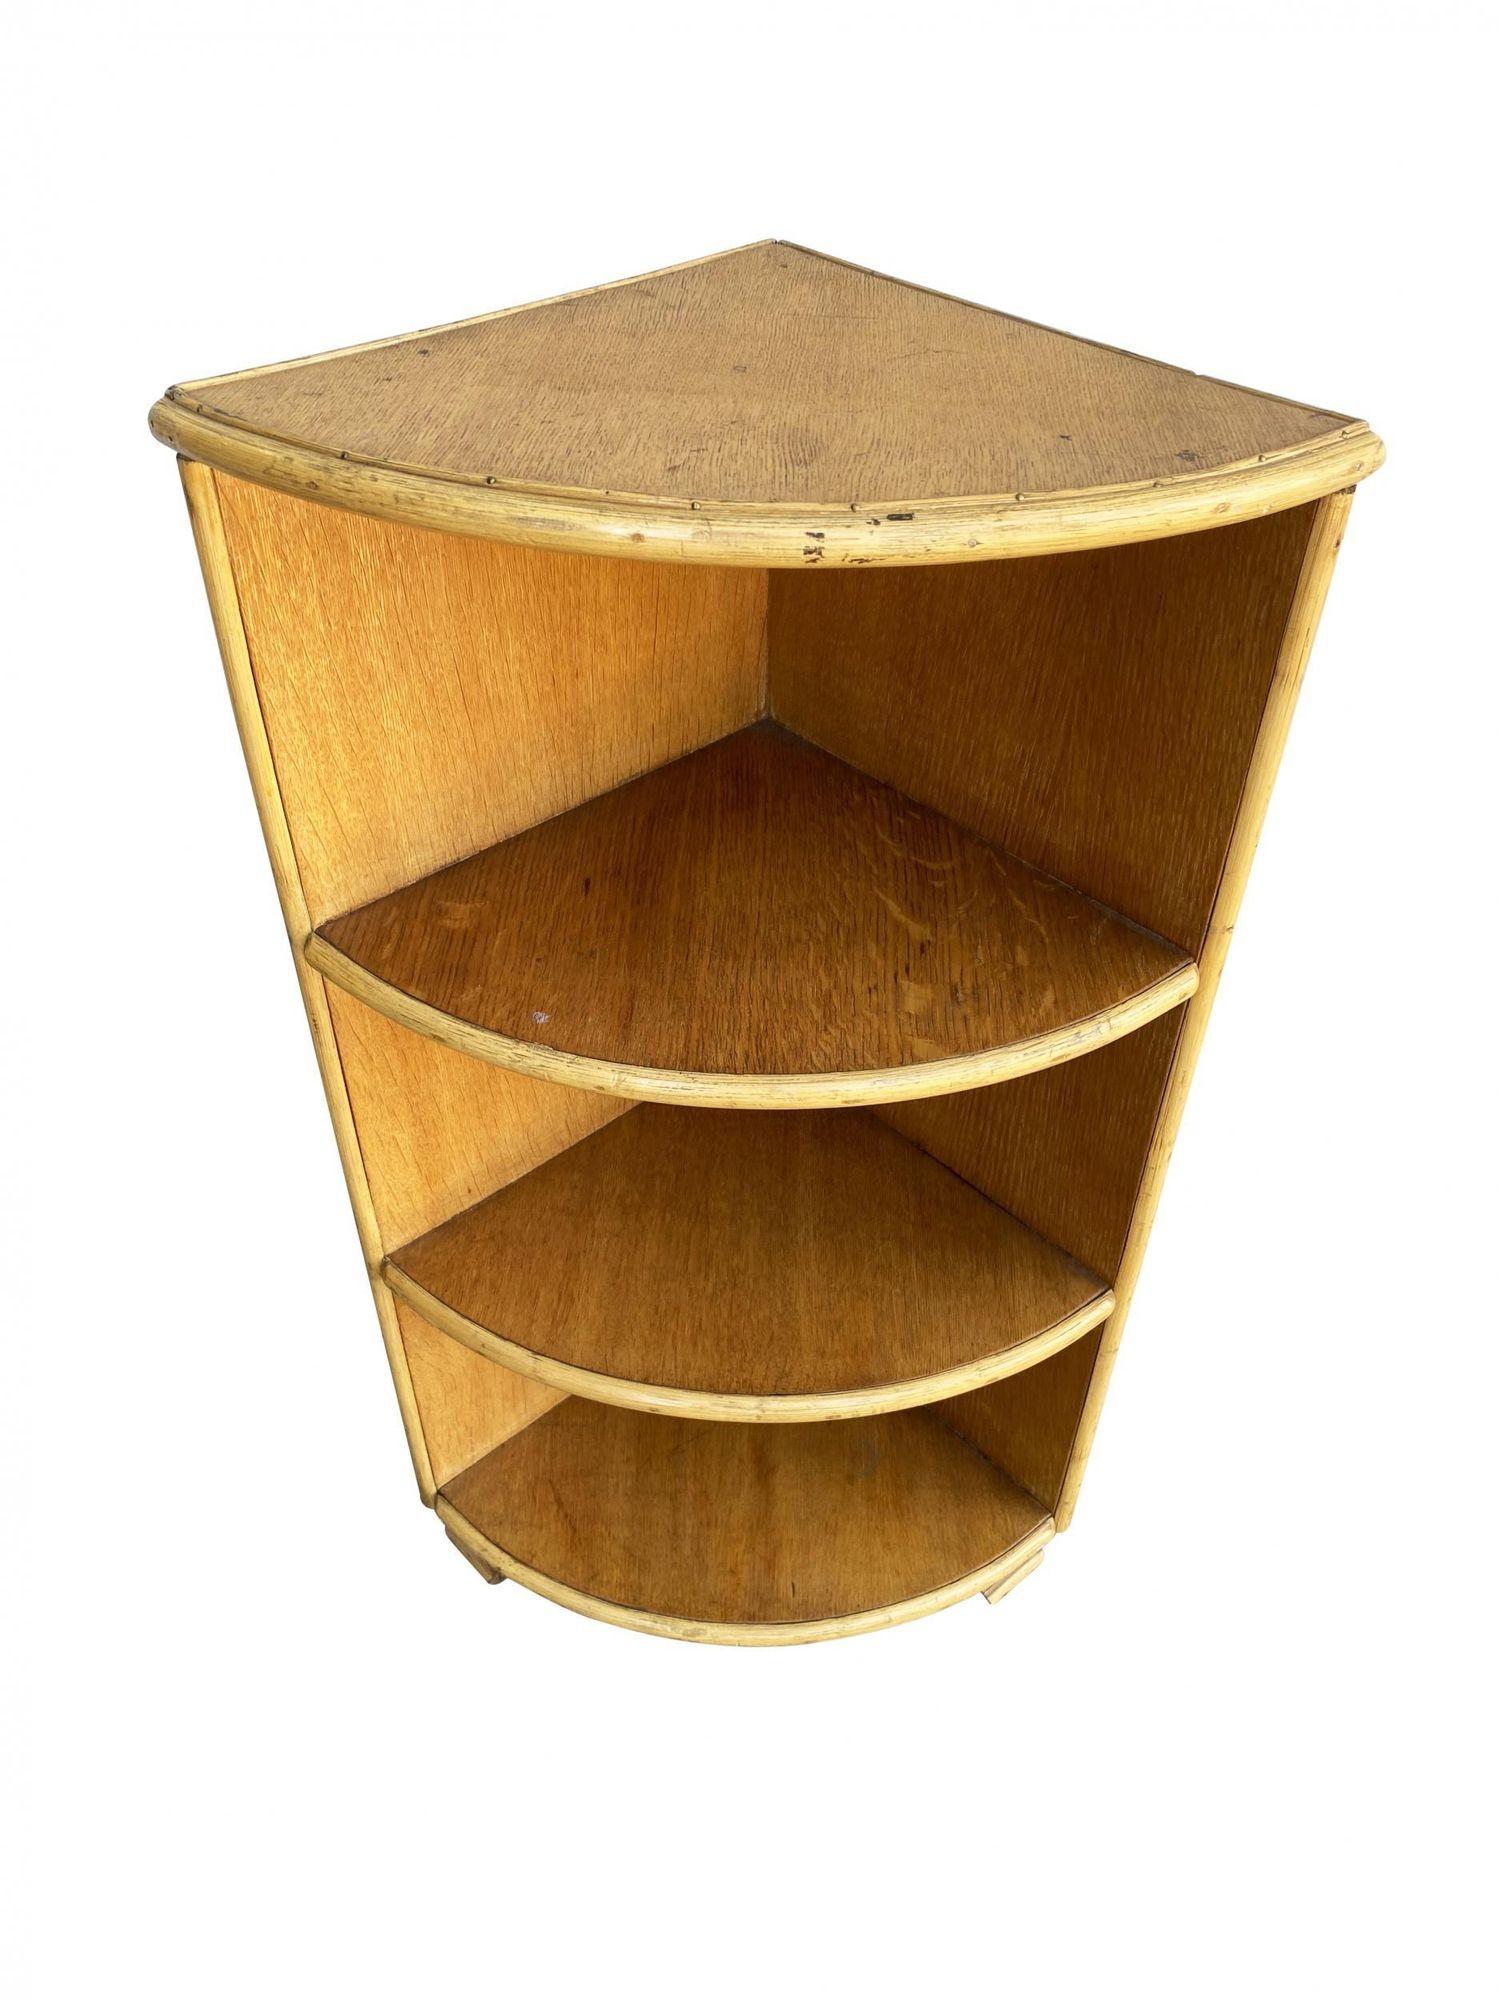 Original Streamline Koa-Holz-Eckregal mit Rattan-Einfassung mit 4 Etagen. Entworfen nach dem Vorbild von Paul Frankl.
1930, Vereinigte Staaten
Wir kaufen und verkaufen nur die besten und feinsten Rattanmöbel, die von den besten und bekanntesten